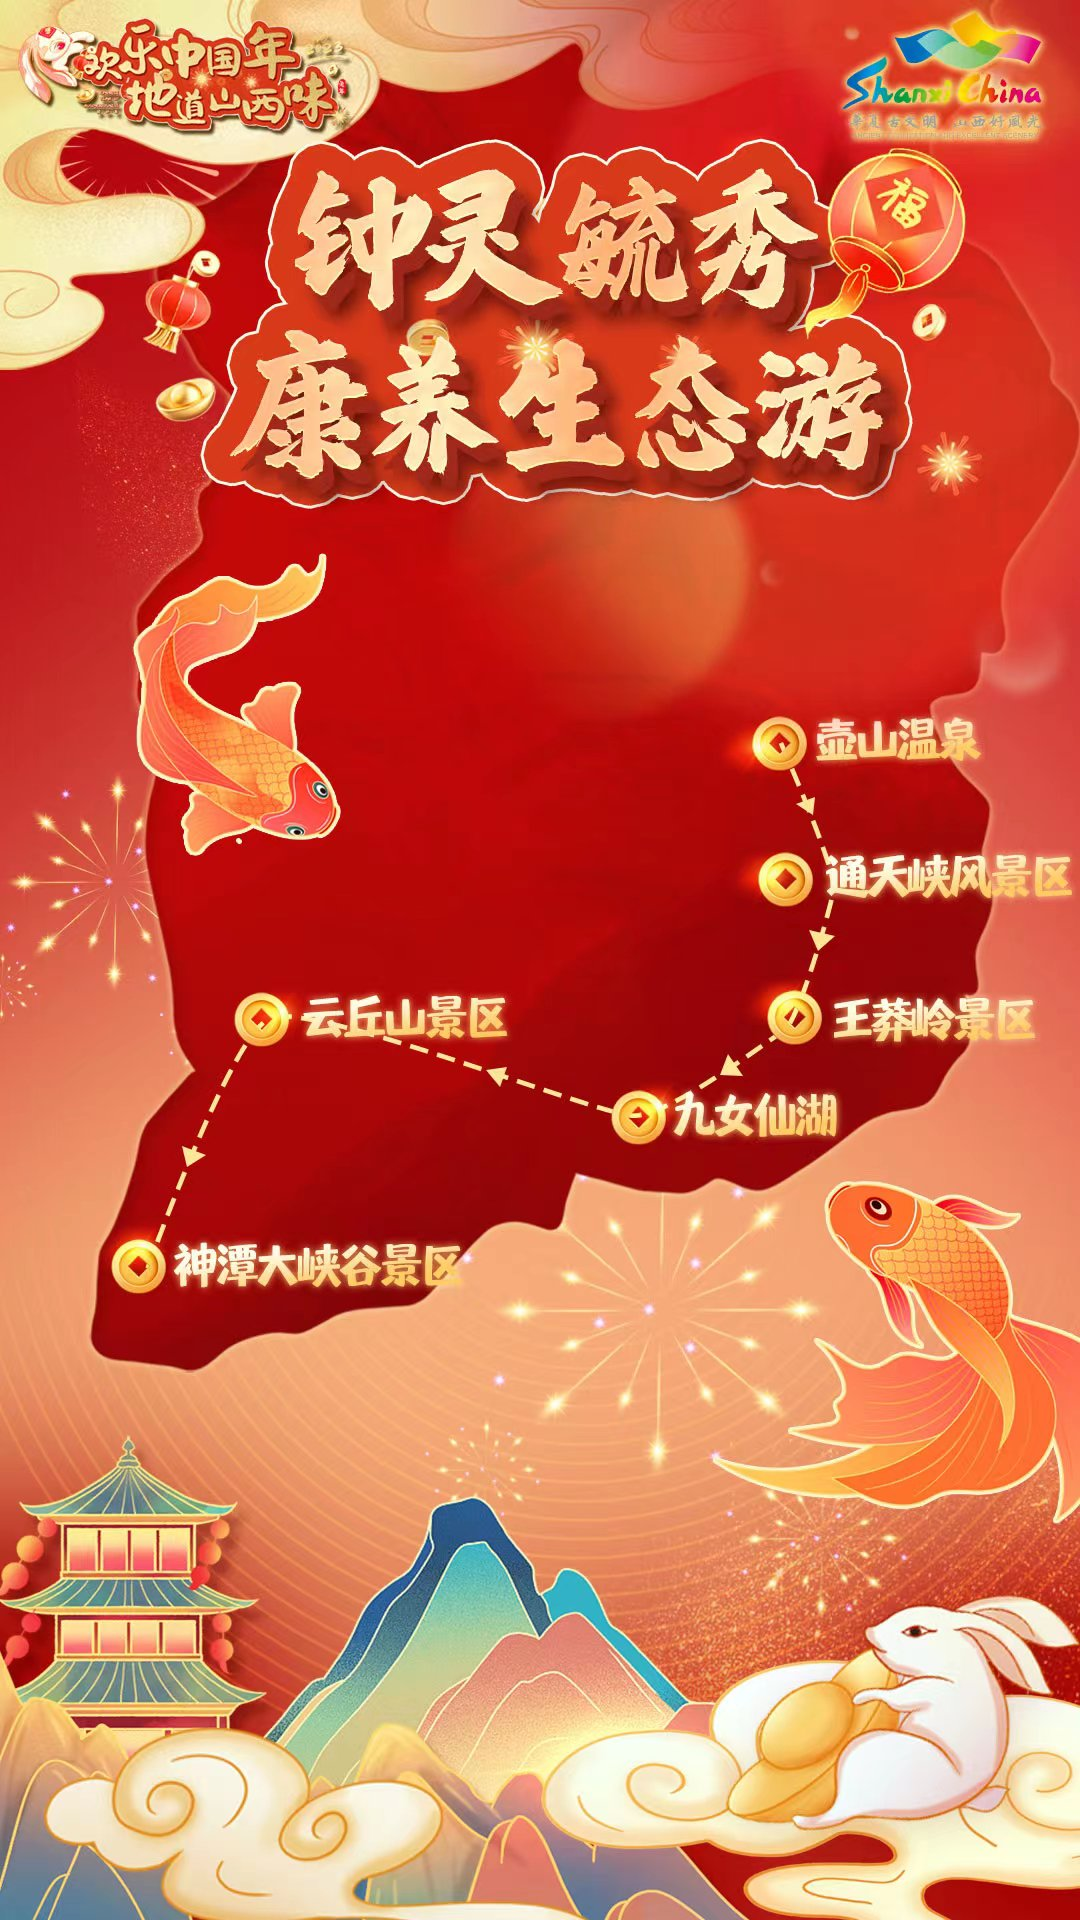 山西发布春节五大精品旅游线路